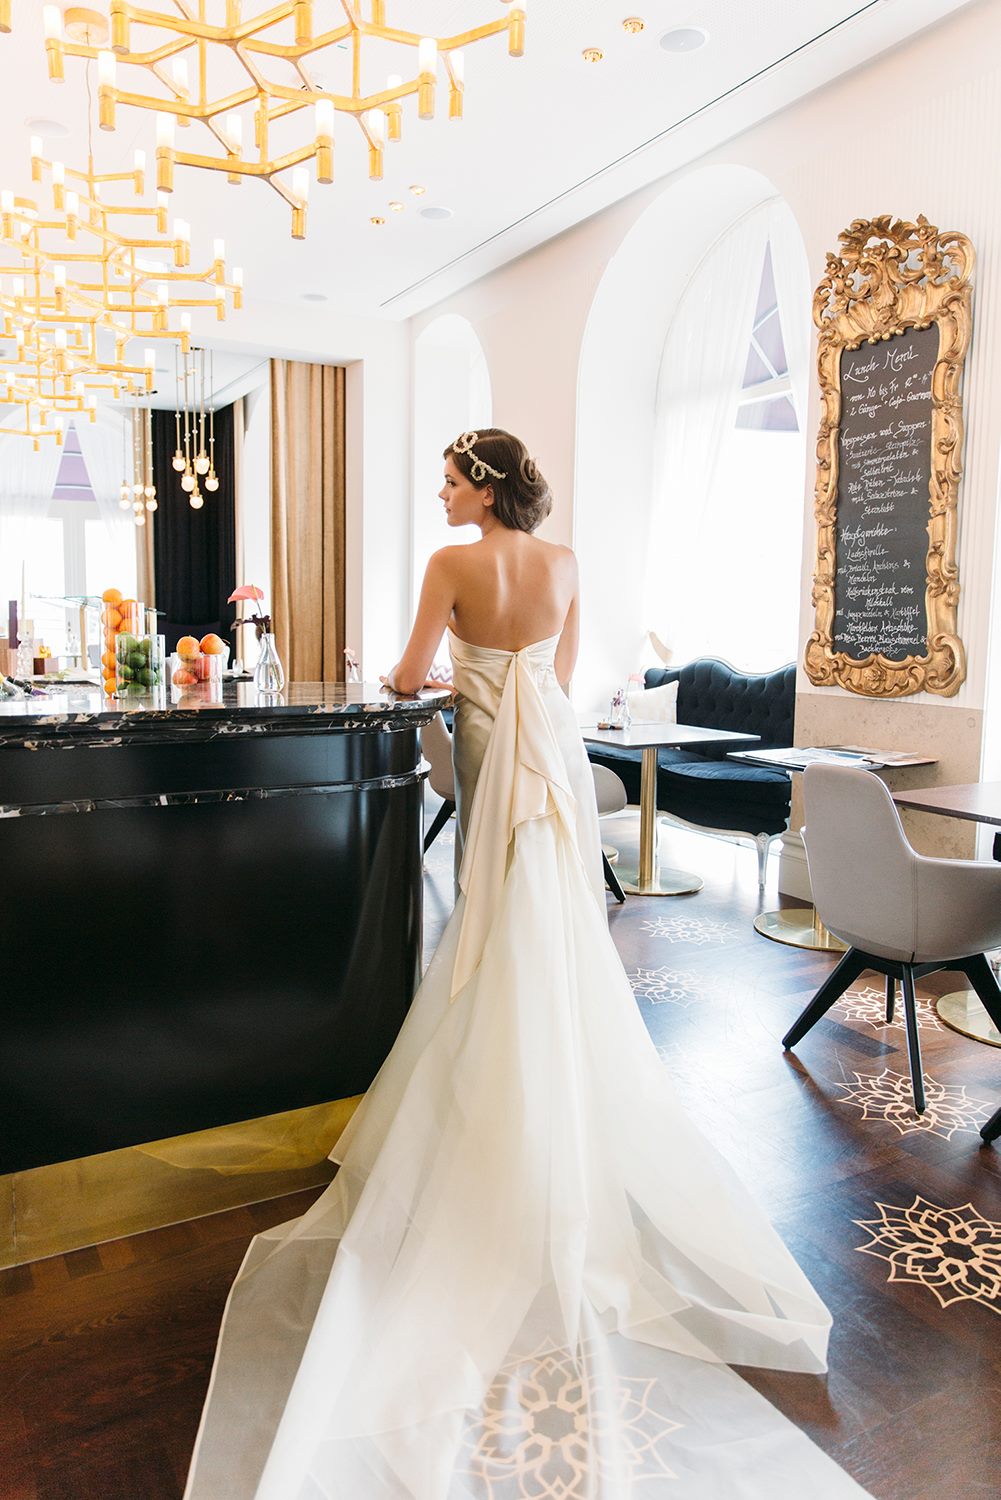 Im Gourmet Restaurant Veranda im Hotel Sans Souci Wien finden Hochzeitsfeiern für bis zu 100 Gästen statt